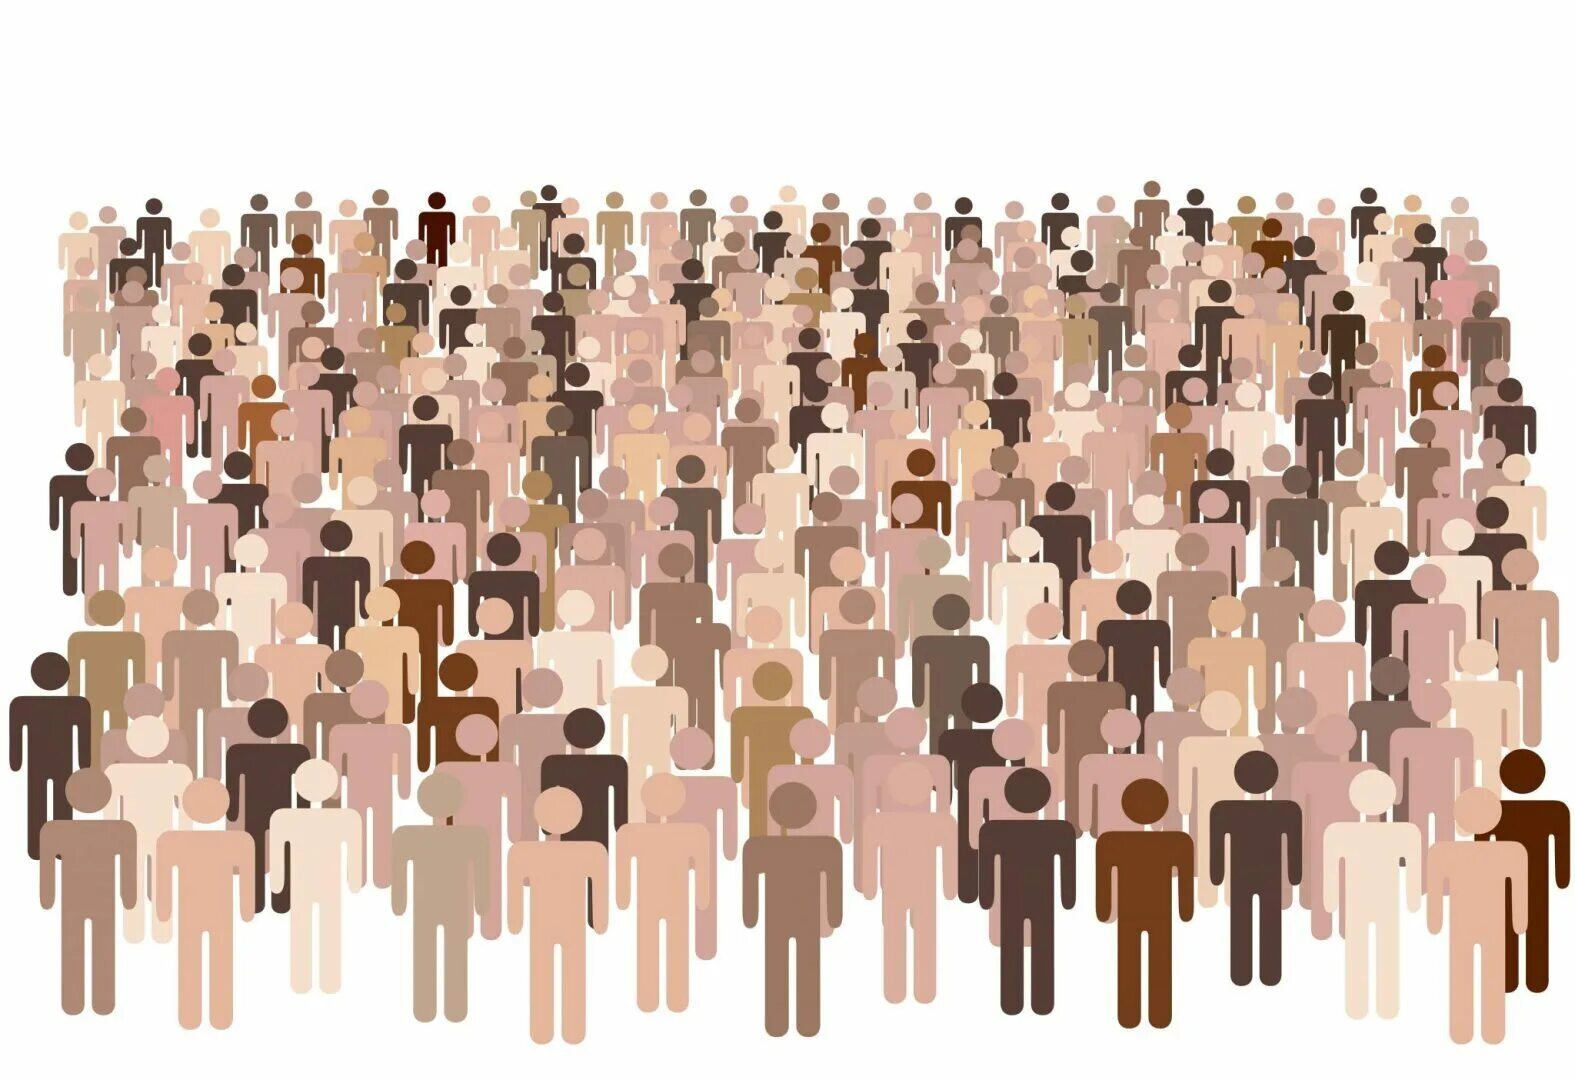 World people population. Много людей. Множество людей. Популяция людей. Много человечков.